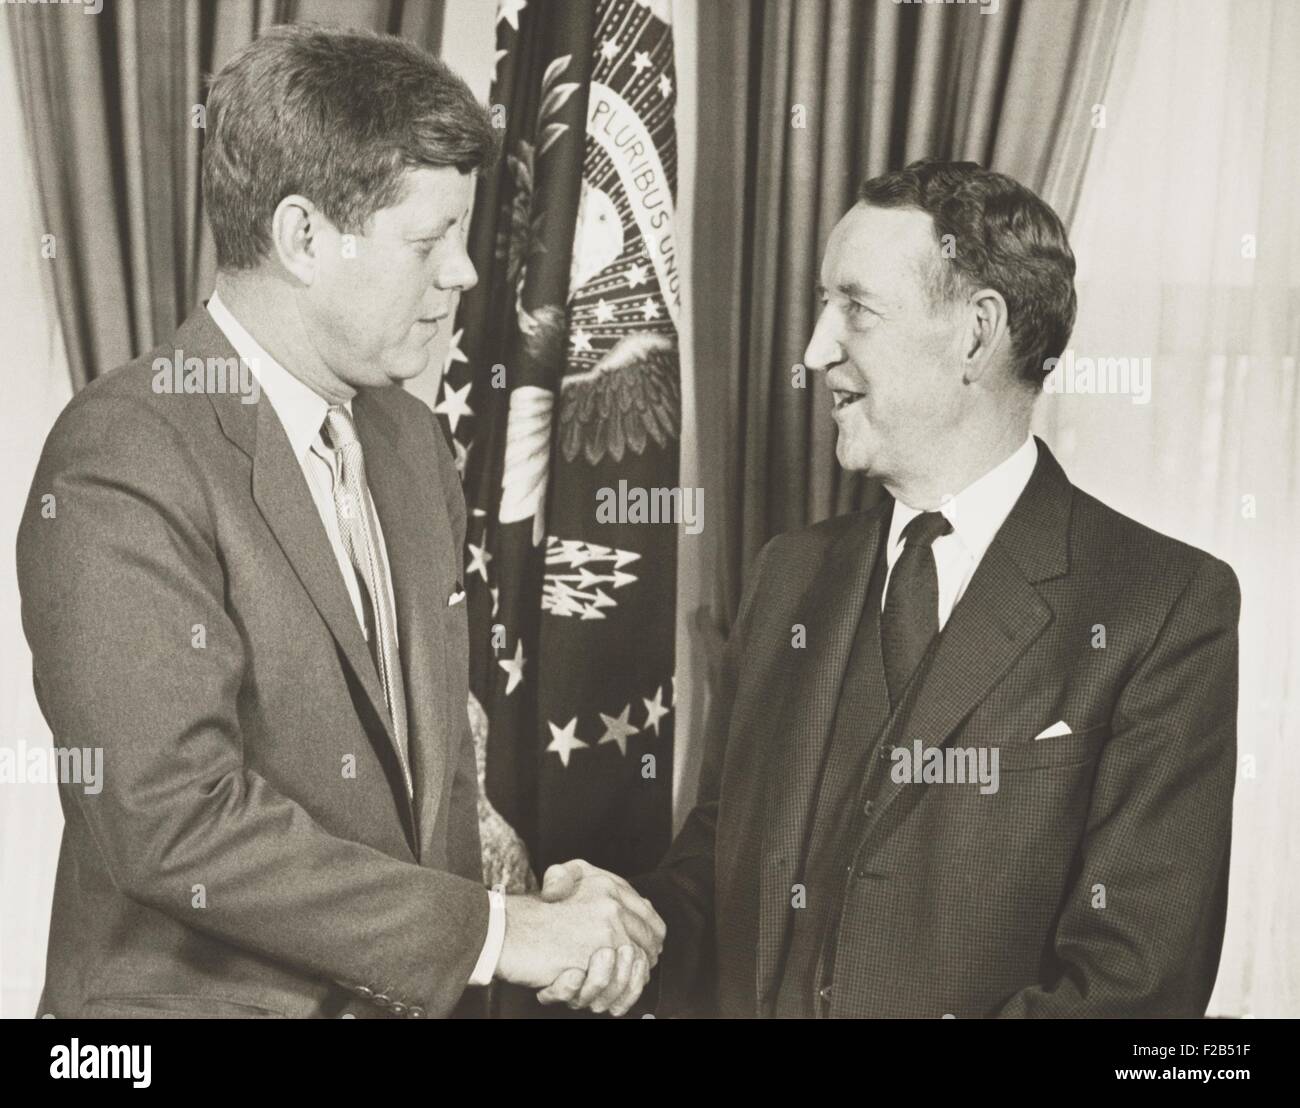 Präsident Kennedy Händeschütteln mit Llewellyn Thompson, US-Botschafter in Russland. 24. Februar 1961. Er schließen Sie Bekanntschaft mit Khrushchev erlaubte es ihm, während der Kubakrise kritisch beraten. 16. Juli 1957, 27. Juli 1962, war er Botschafter in UdSSR in der Eisenhower und Kennedy-Administration. -(BSLOC 2015 1 150) Stockfoto